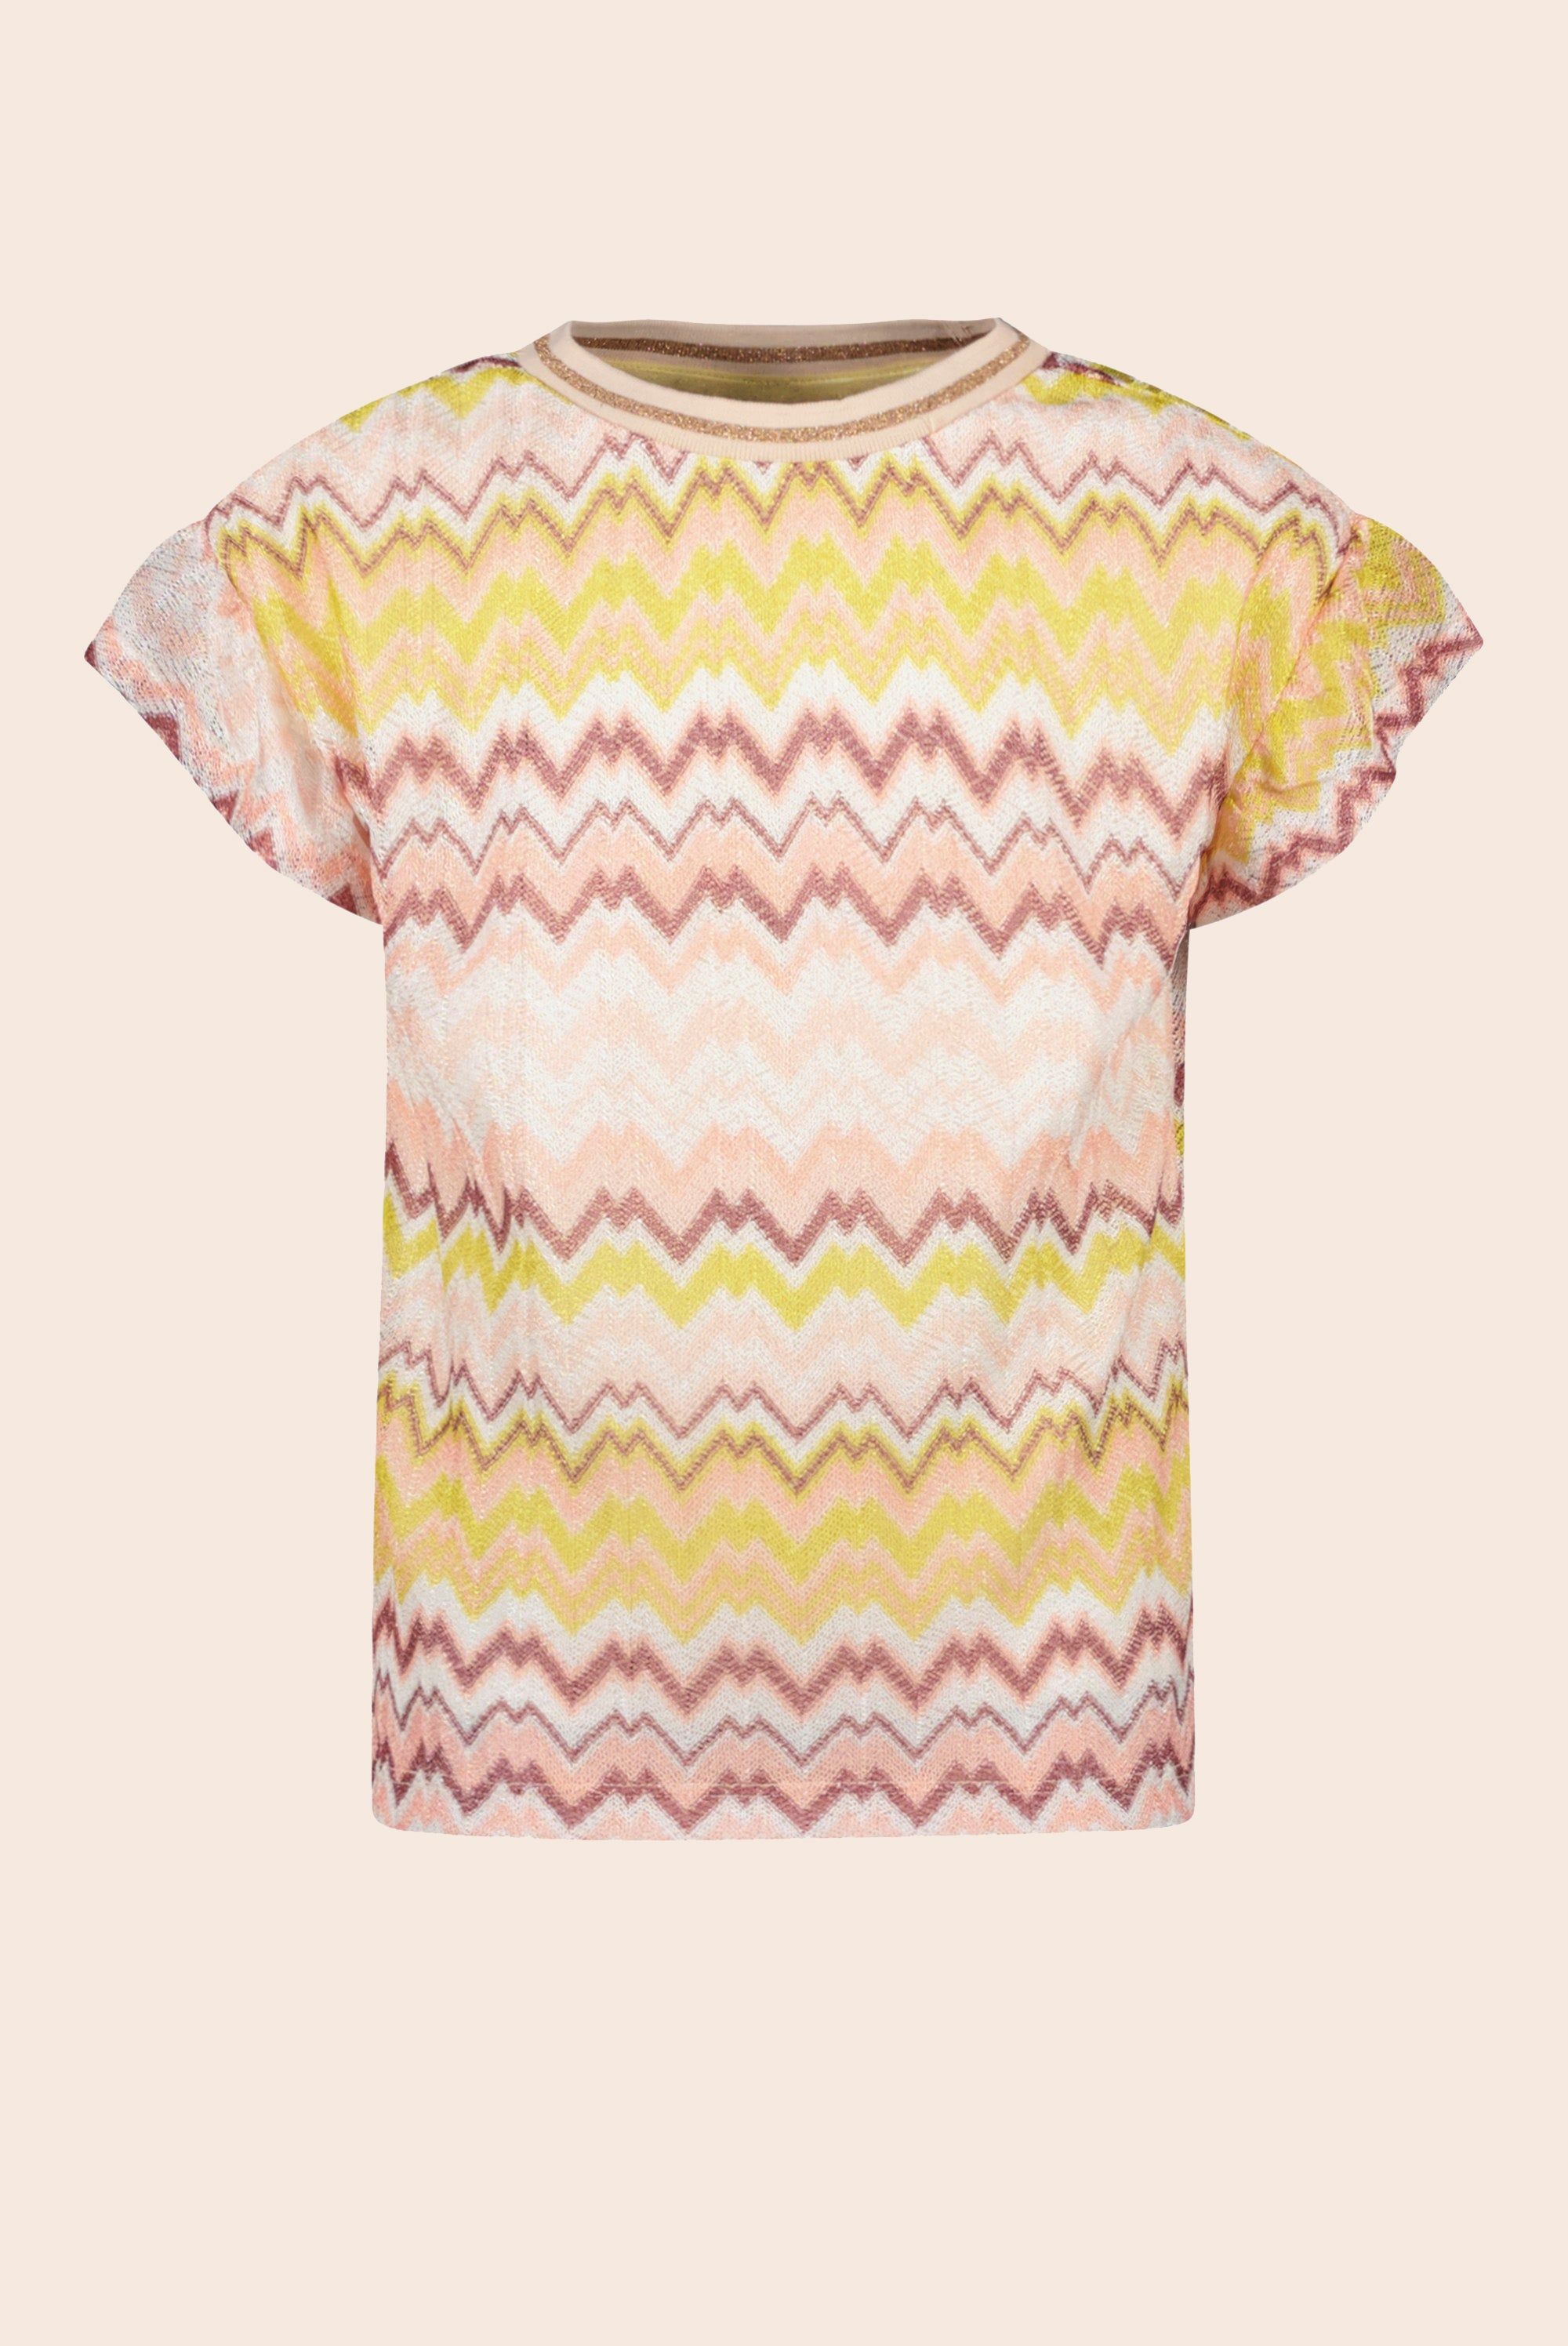 T-Shirt Flo girls zigzag ruffle top